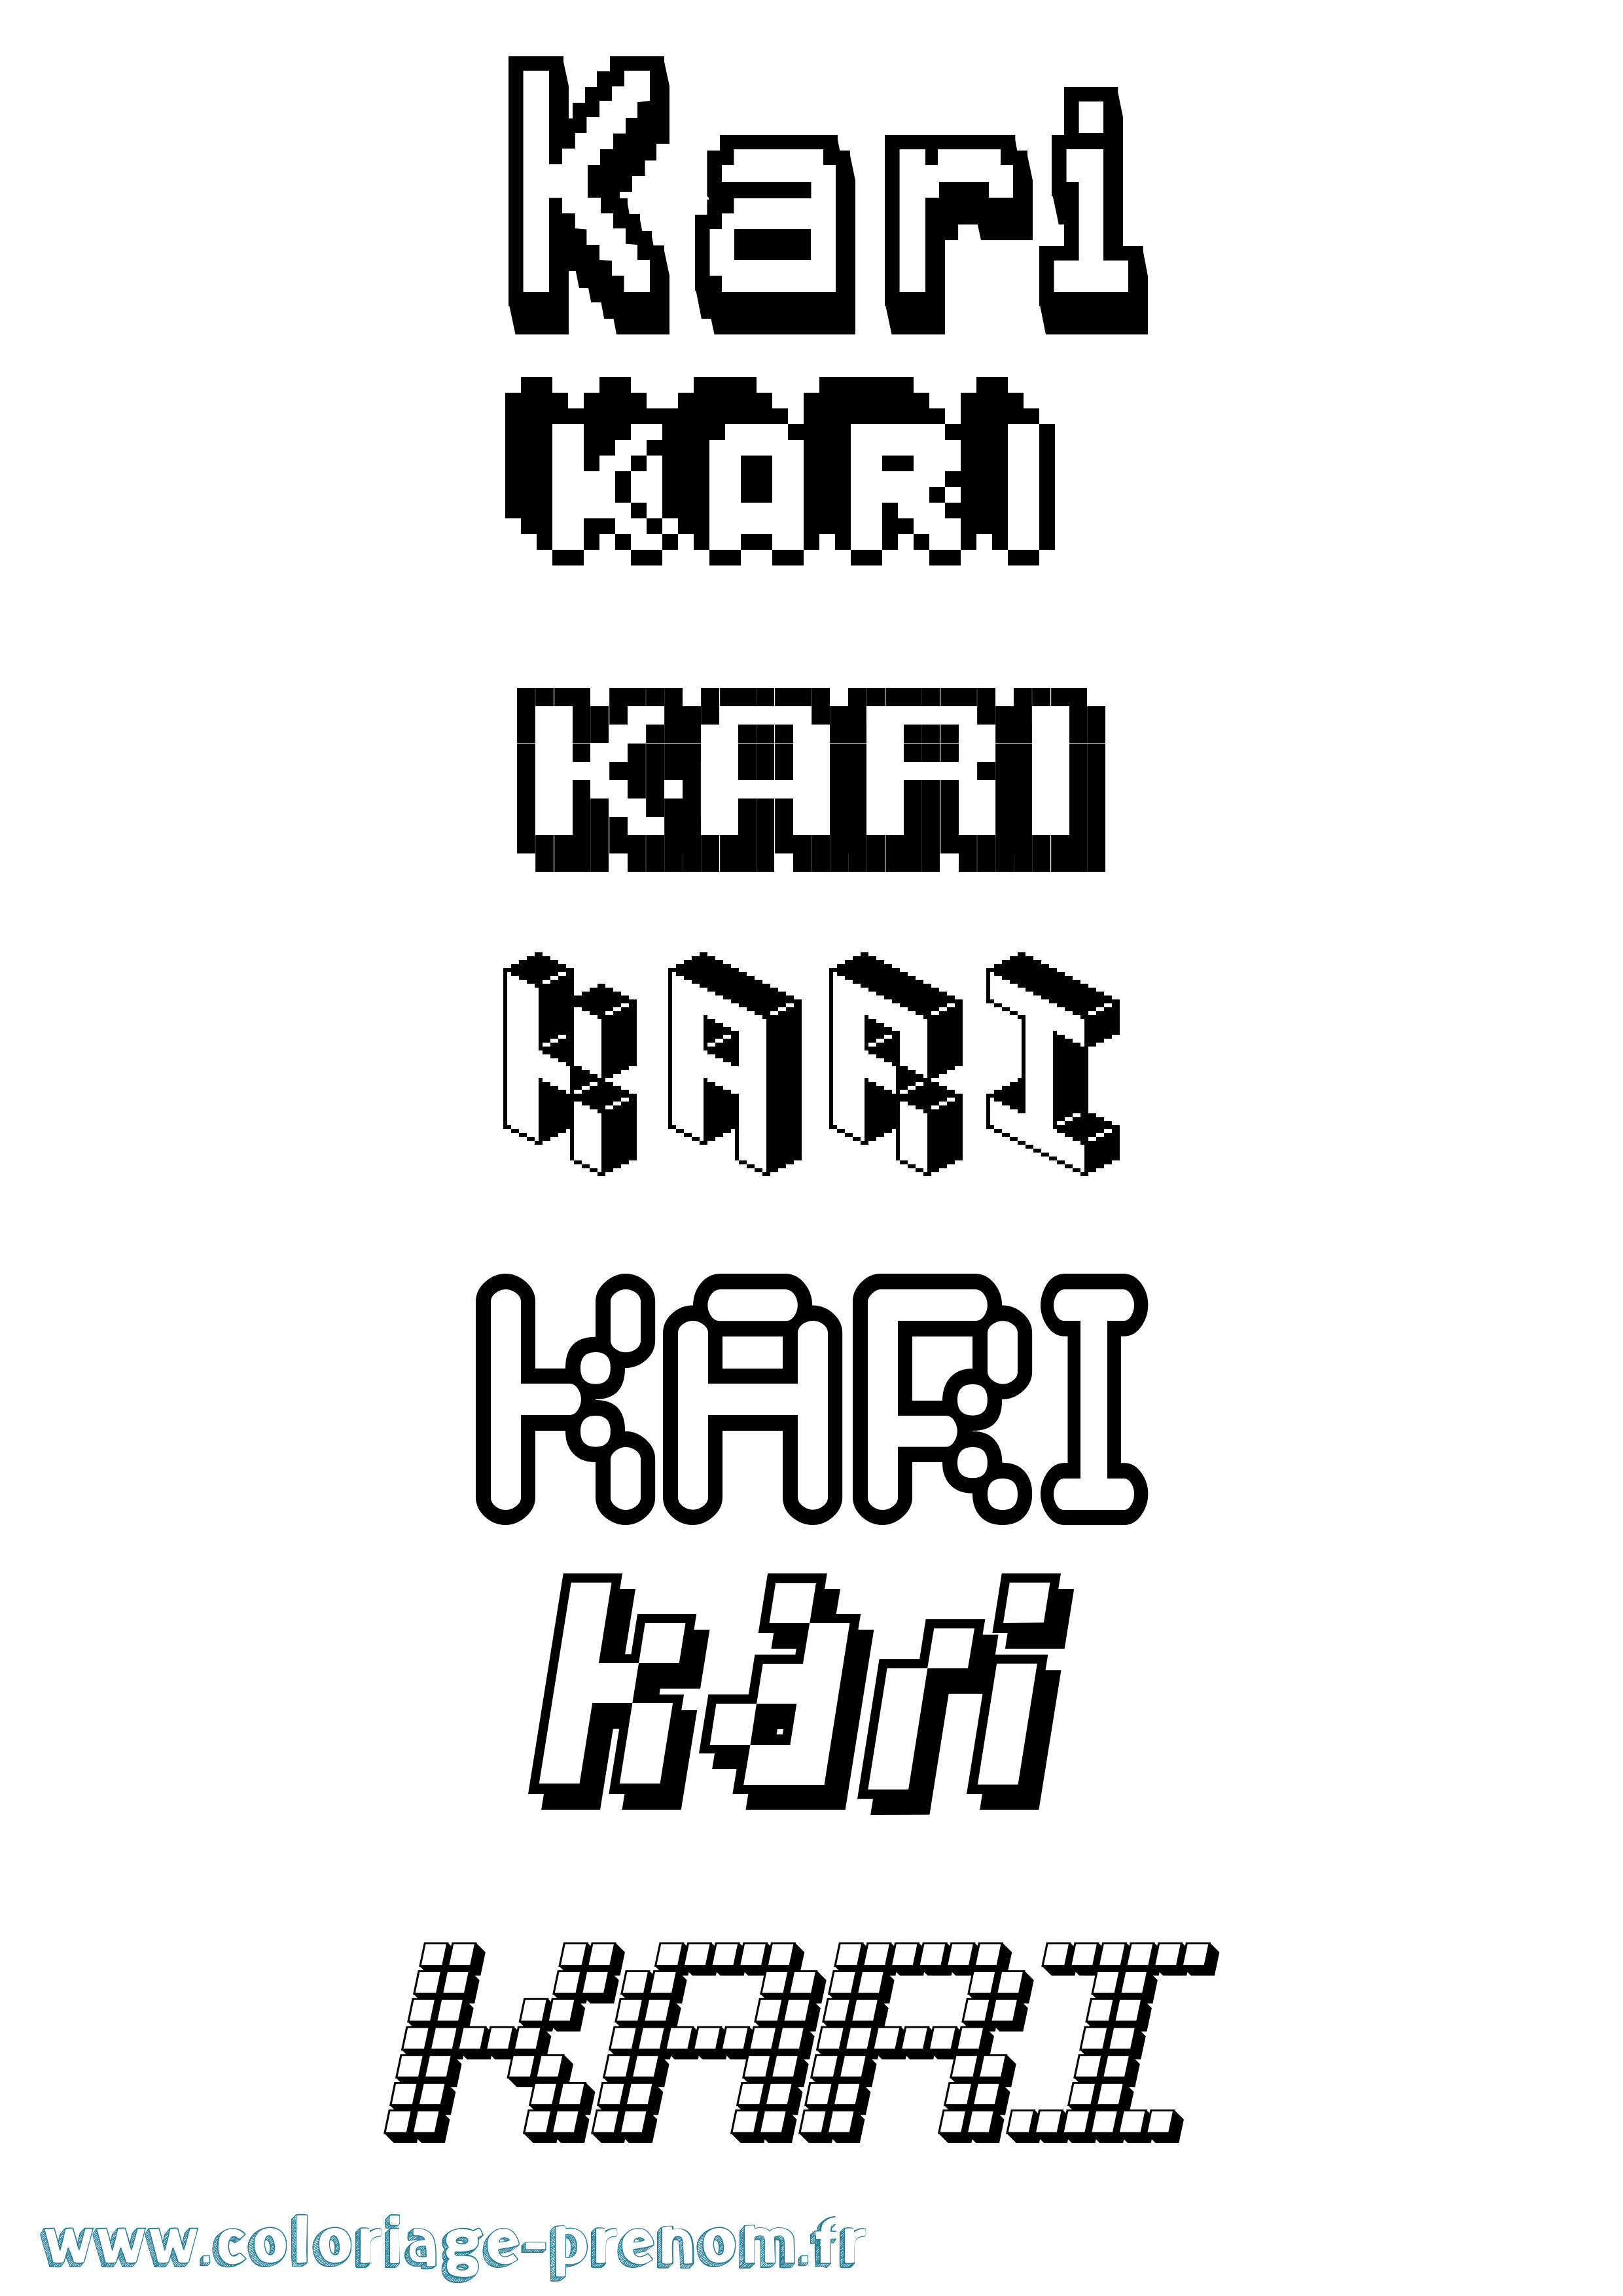 Coloriage prénom Kari Pixel